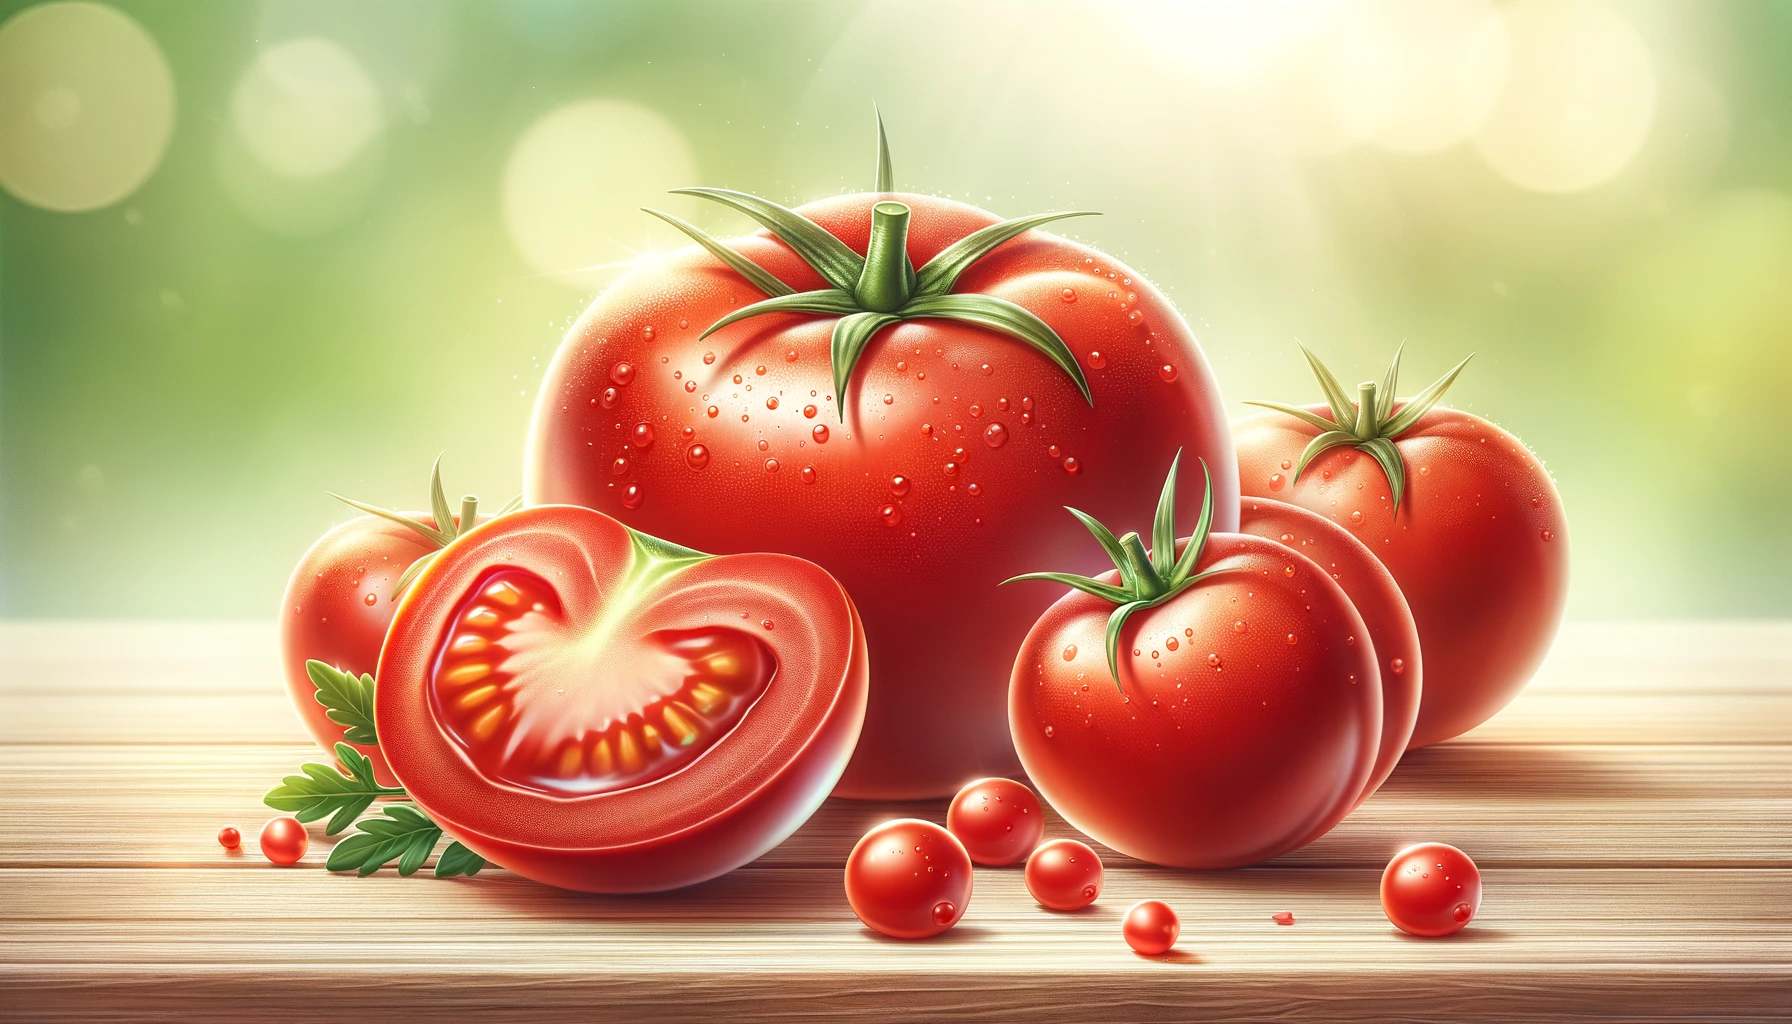 Manfaat Buah Tomat Untuk Wajah